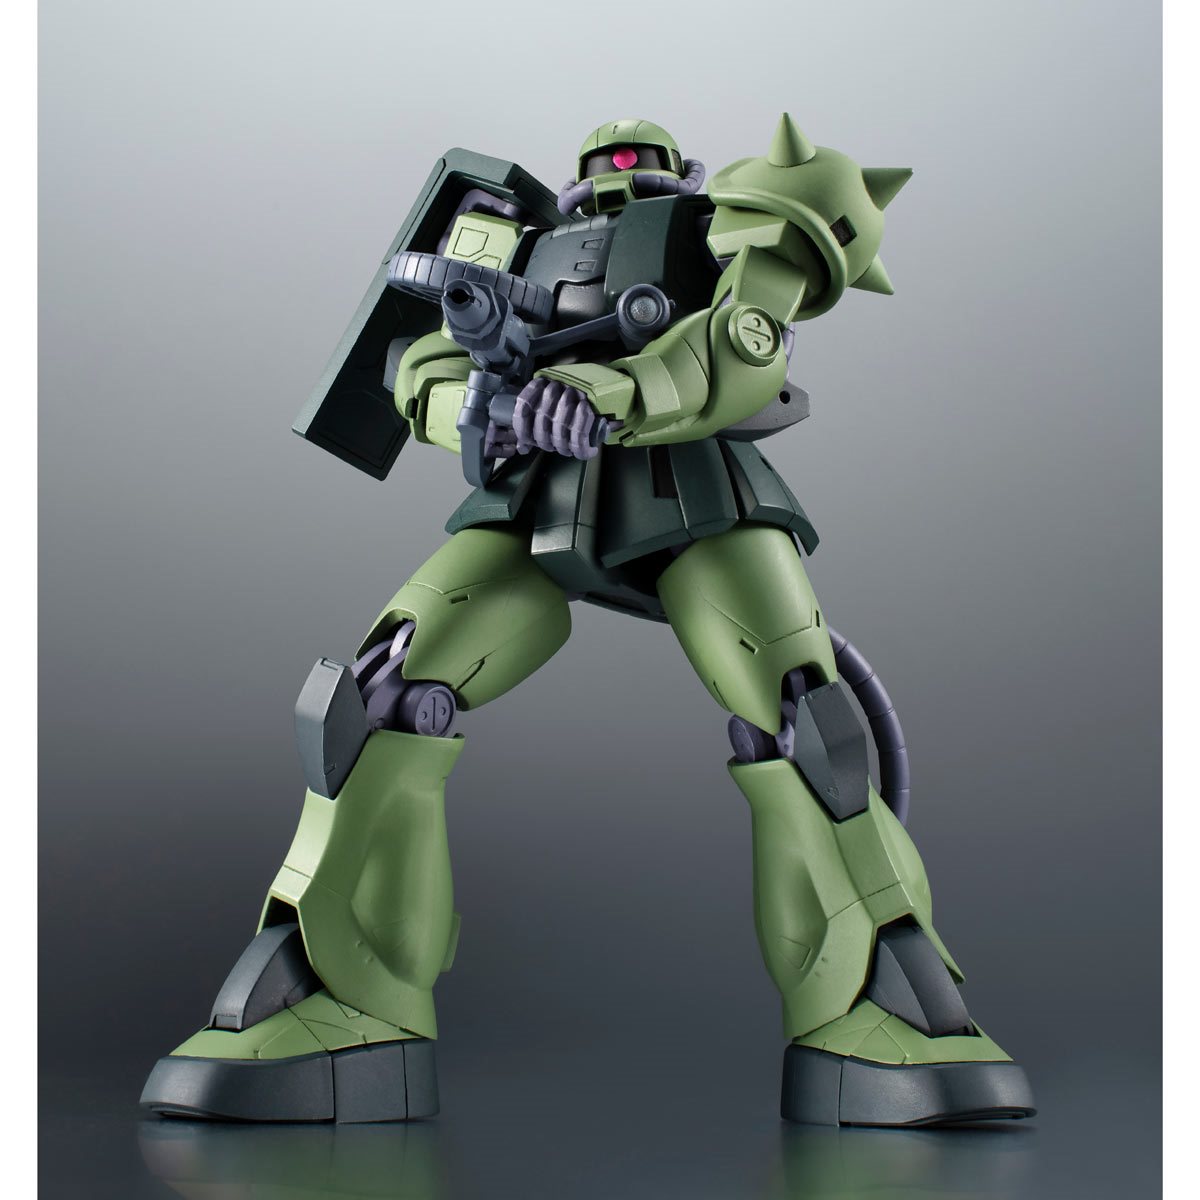 Bandai Tamashii Nations The Robot Spirits: Mobile Suit Gundam - MS06JC ZAKU II Figura de Accion